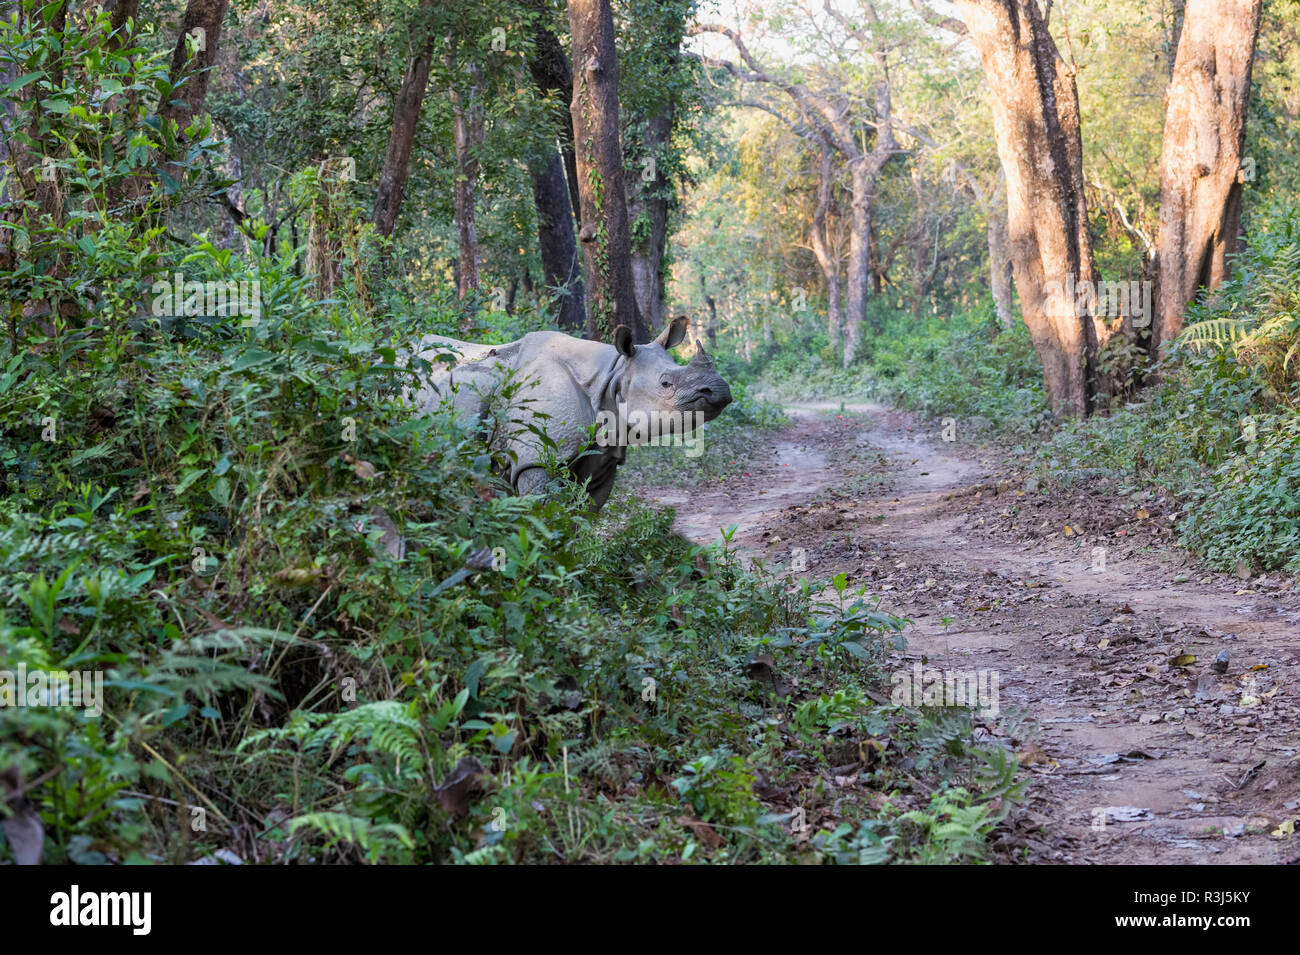 Le rhinocéros indien (Rhinoceros unicornis) traversée route forestière en jungle, parc national de Chitwan, au Népal Banque D'Images